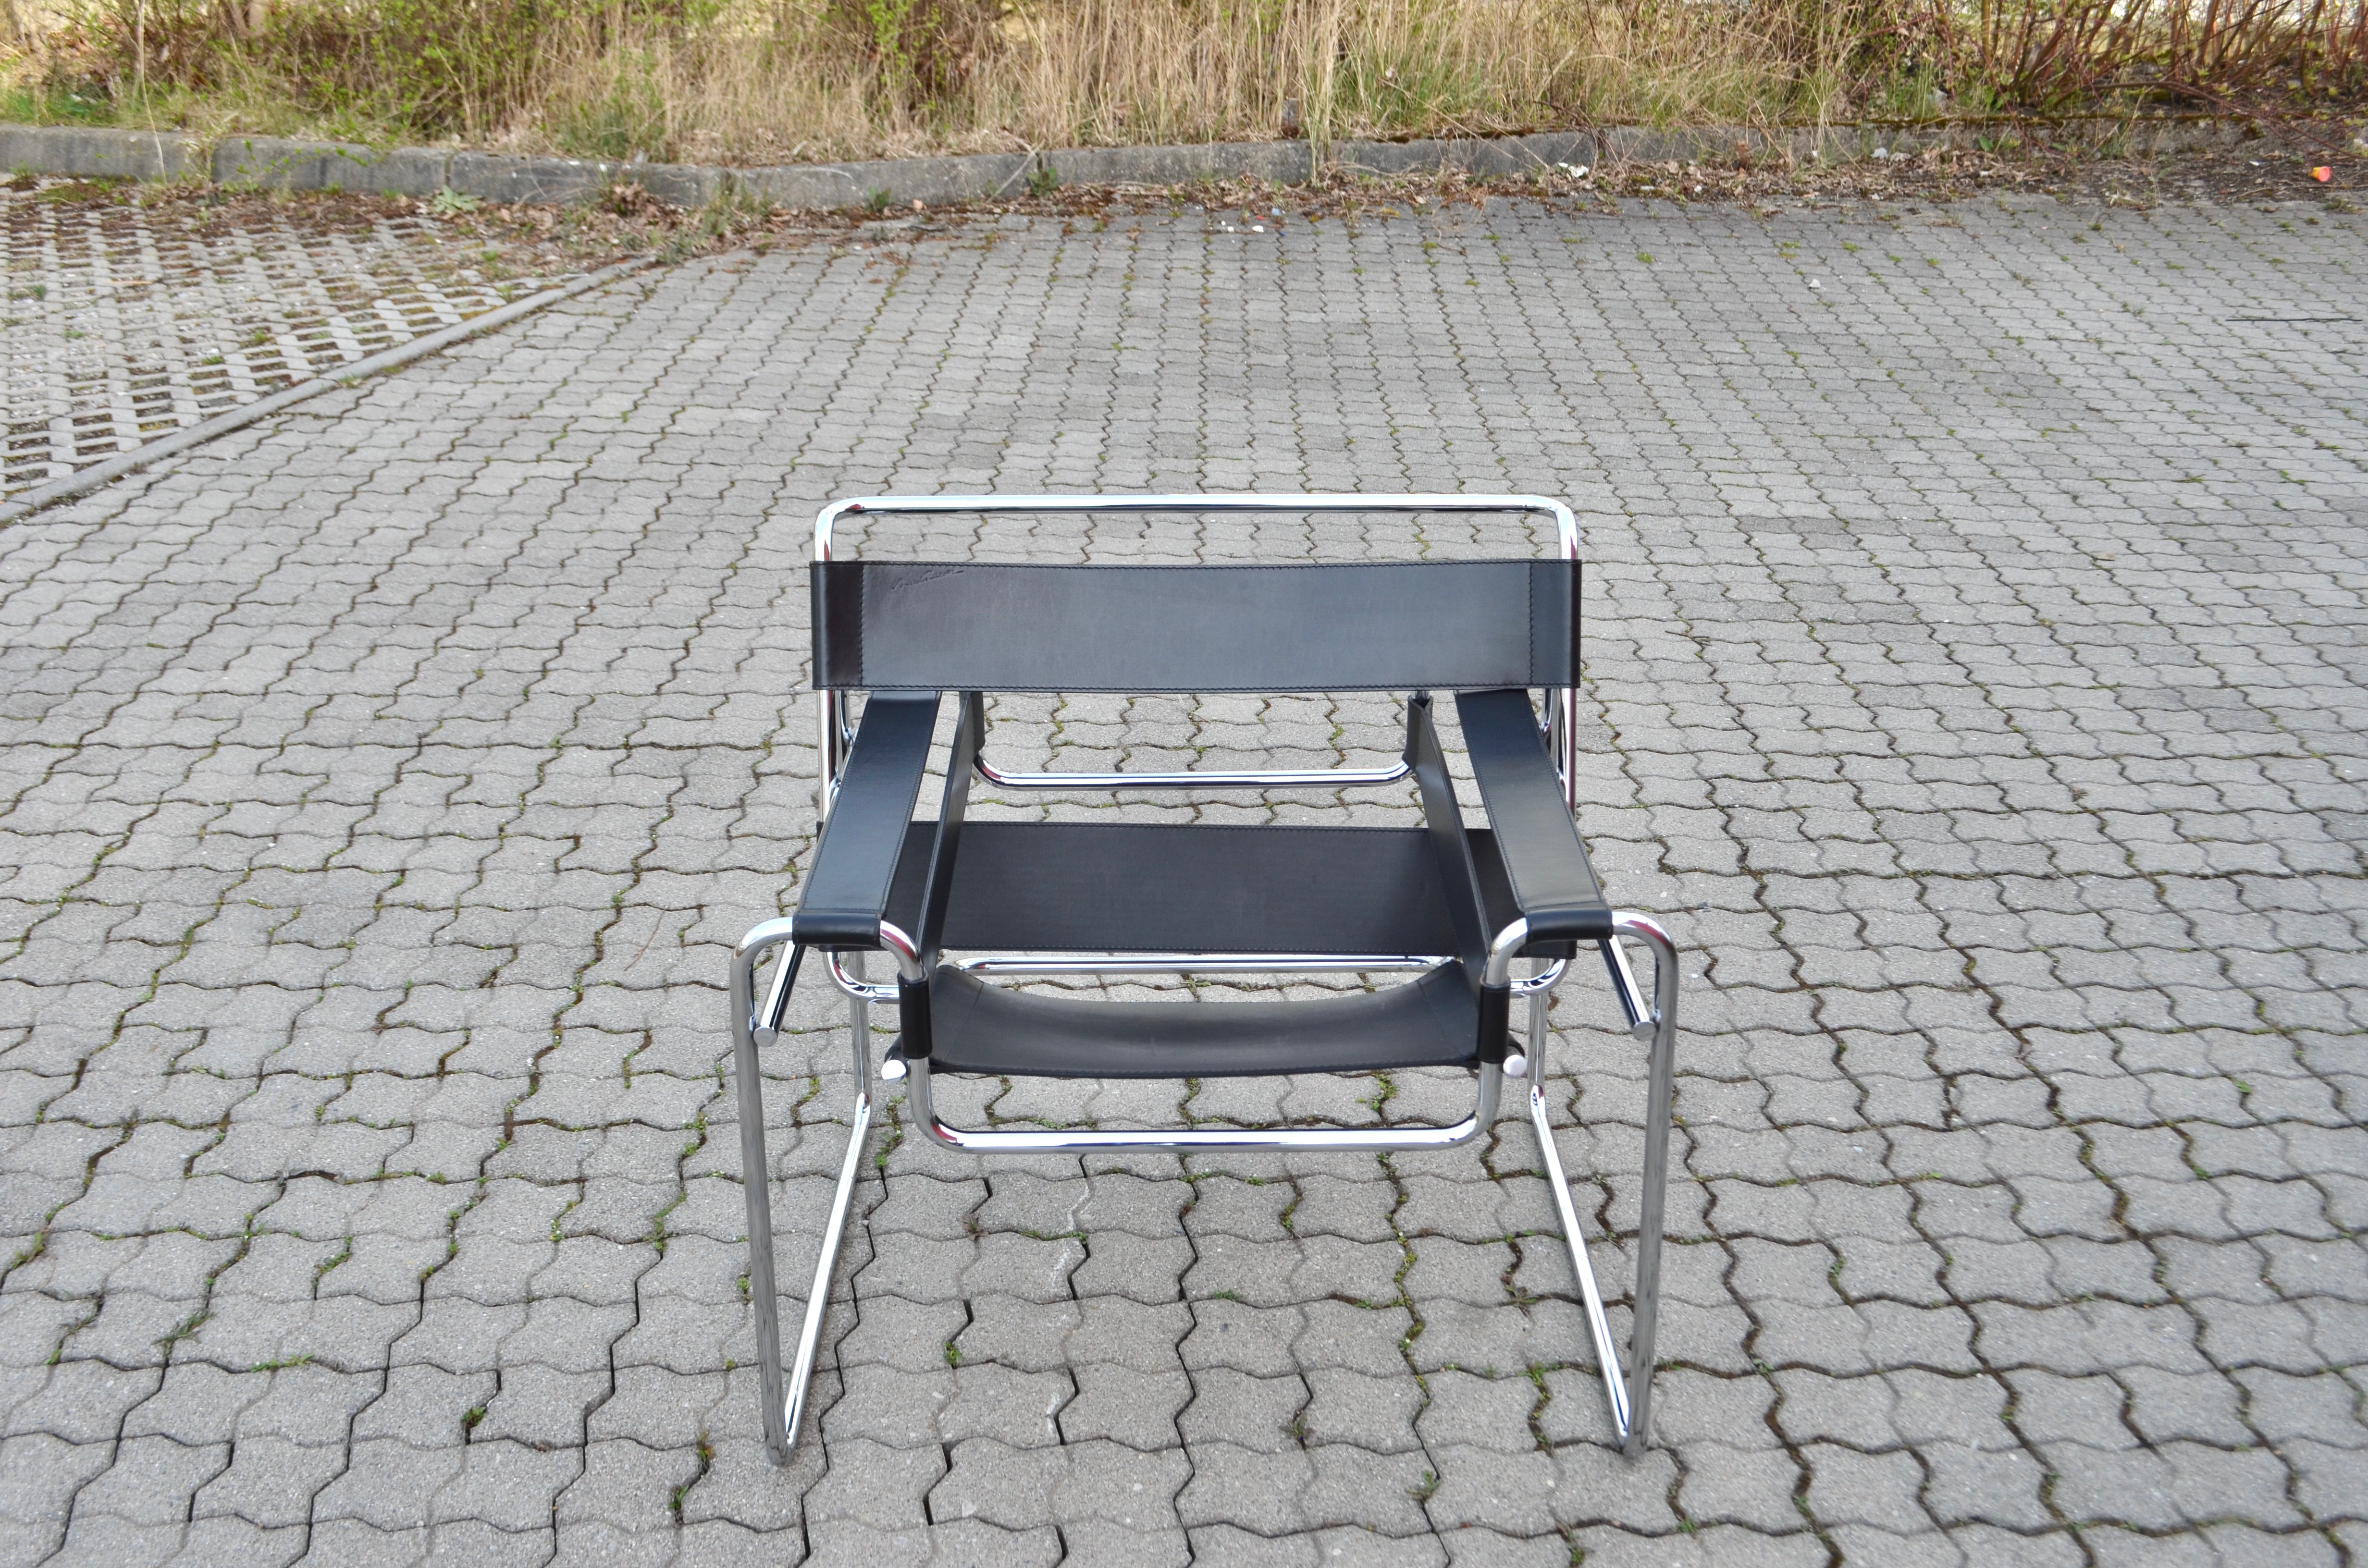 Dieser Wassily-Stuhl aus verchromtem Stahlrohr und schwarzem Leder wurde von Marcel Breuer entworfen und von Knoll International hergestellt.
Produktion von Knoll International mit dem Stempel von Marcel Breuer.
Chromrahmen in sehr gutem